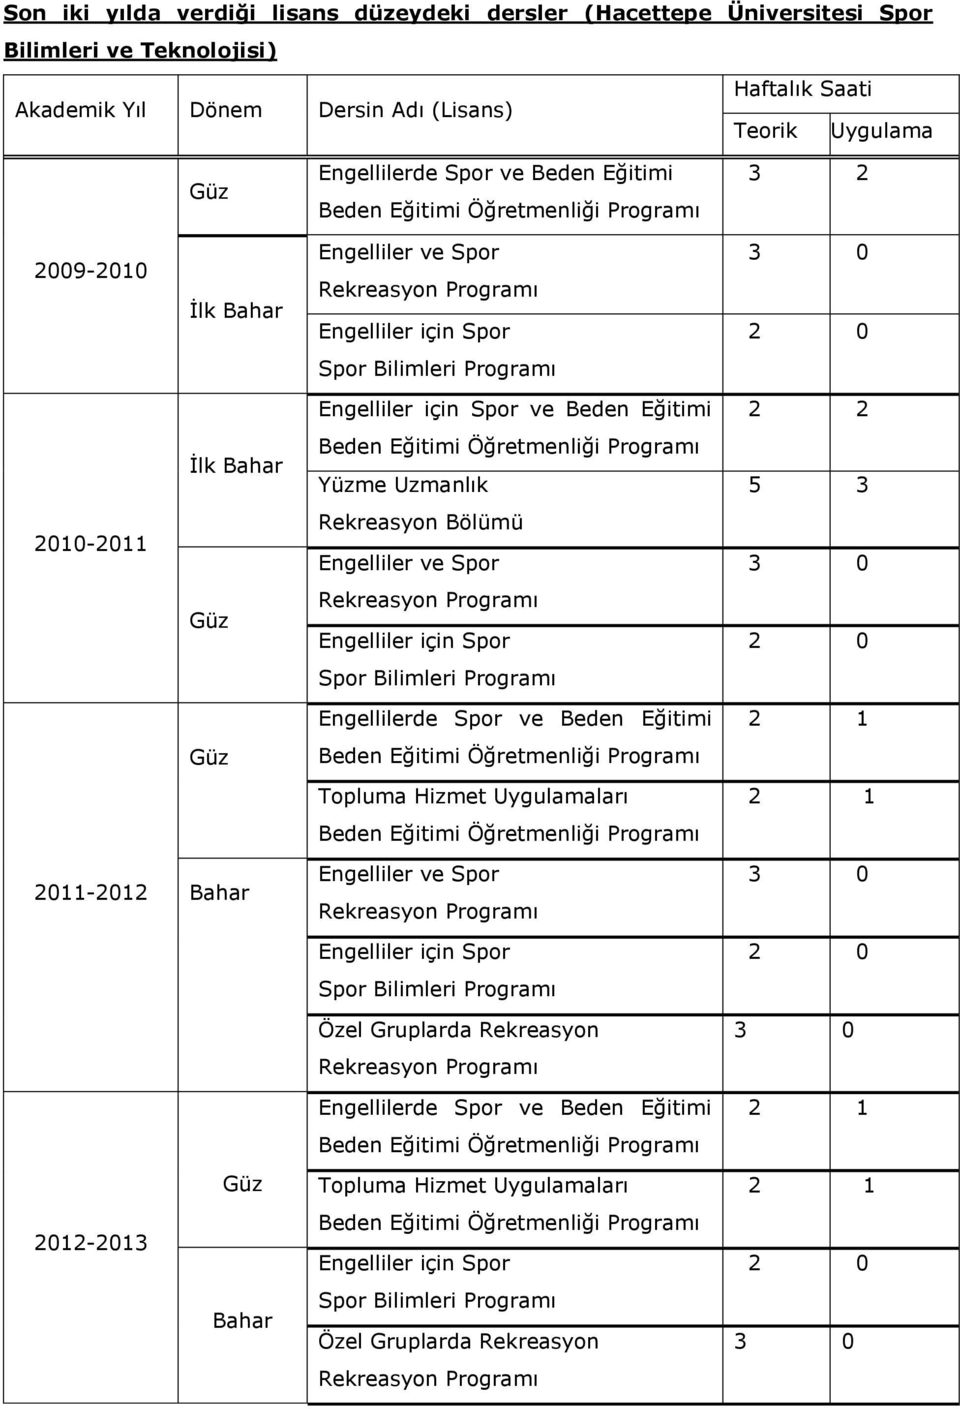 Uzmanlık 5 3 2010-2011 Rekreasyon Bölümü Engelliler ve Spor Engellilerde Spor ve Beden Eğitimi Topluma Hizmet Uygulamaları 2011-2012 Bahar